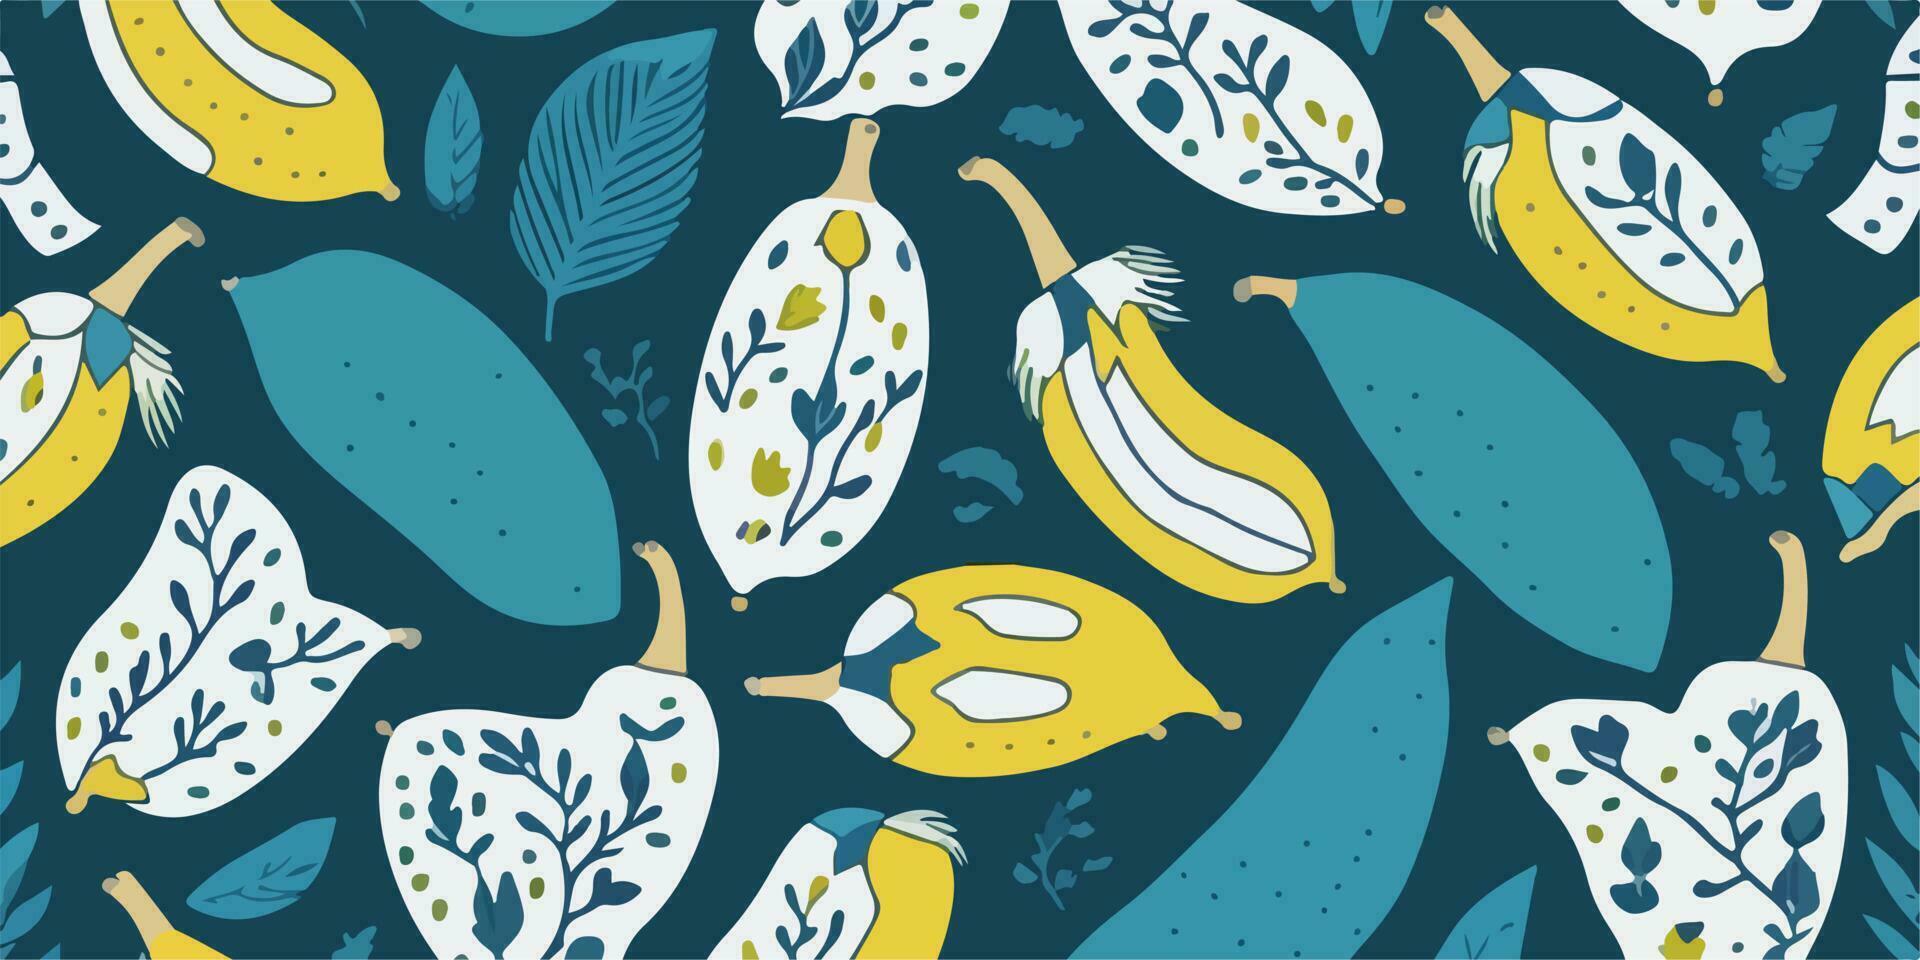 dekorativ Einzelheiten, Vektor Illustration von Banane Muster zum Sommer-